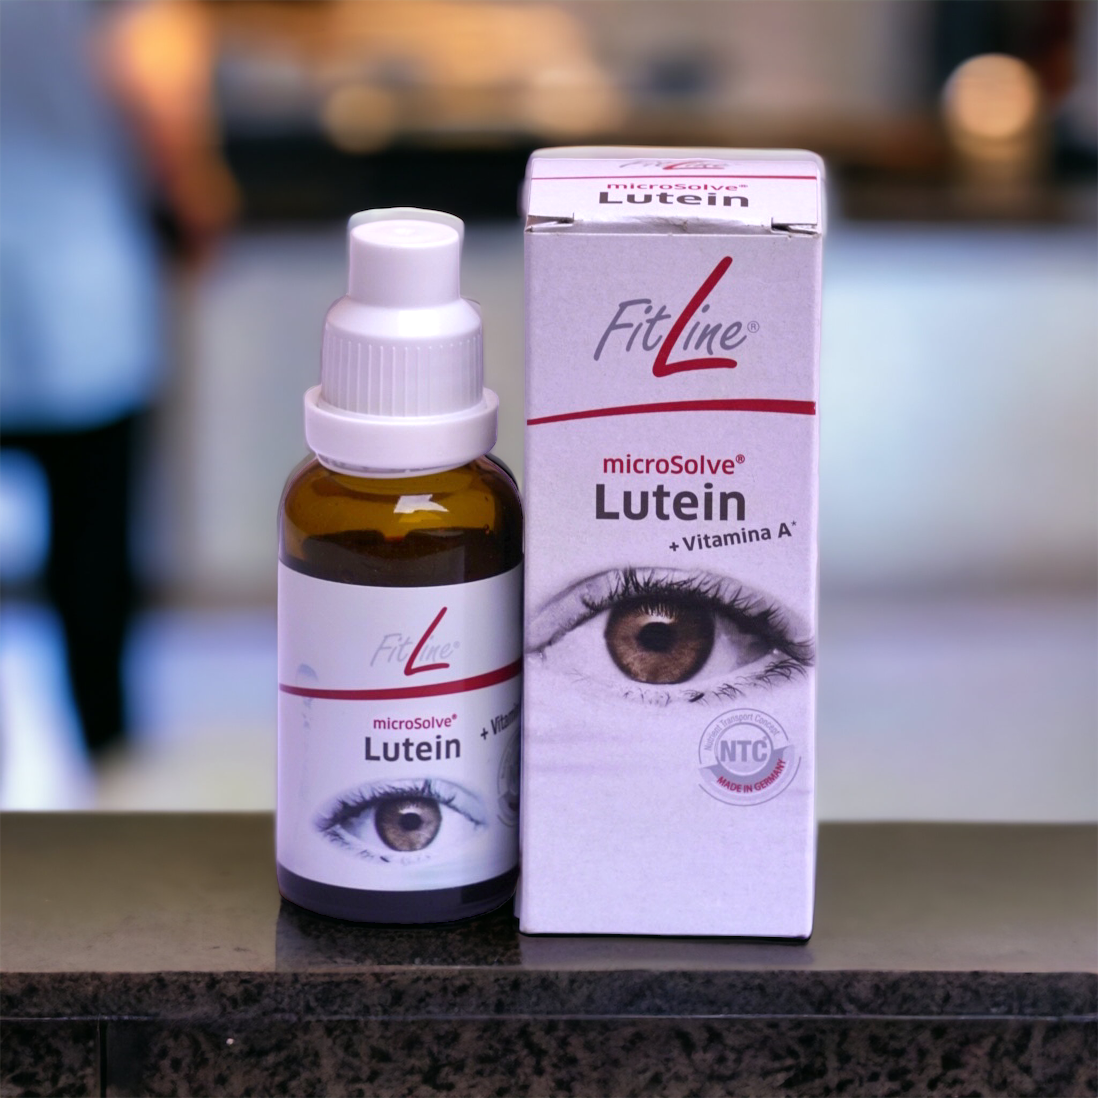 luteina fitline, pm international, lutein para la vista, fatiga visual, vista cansada, antioxidante vitamina A natural, nutricion celular, natural cells care